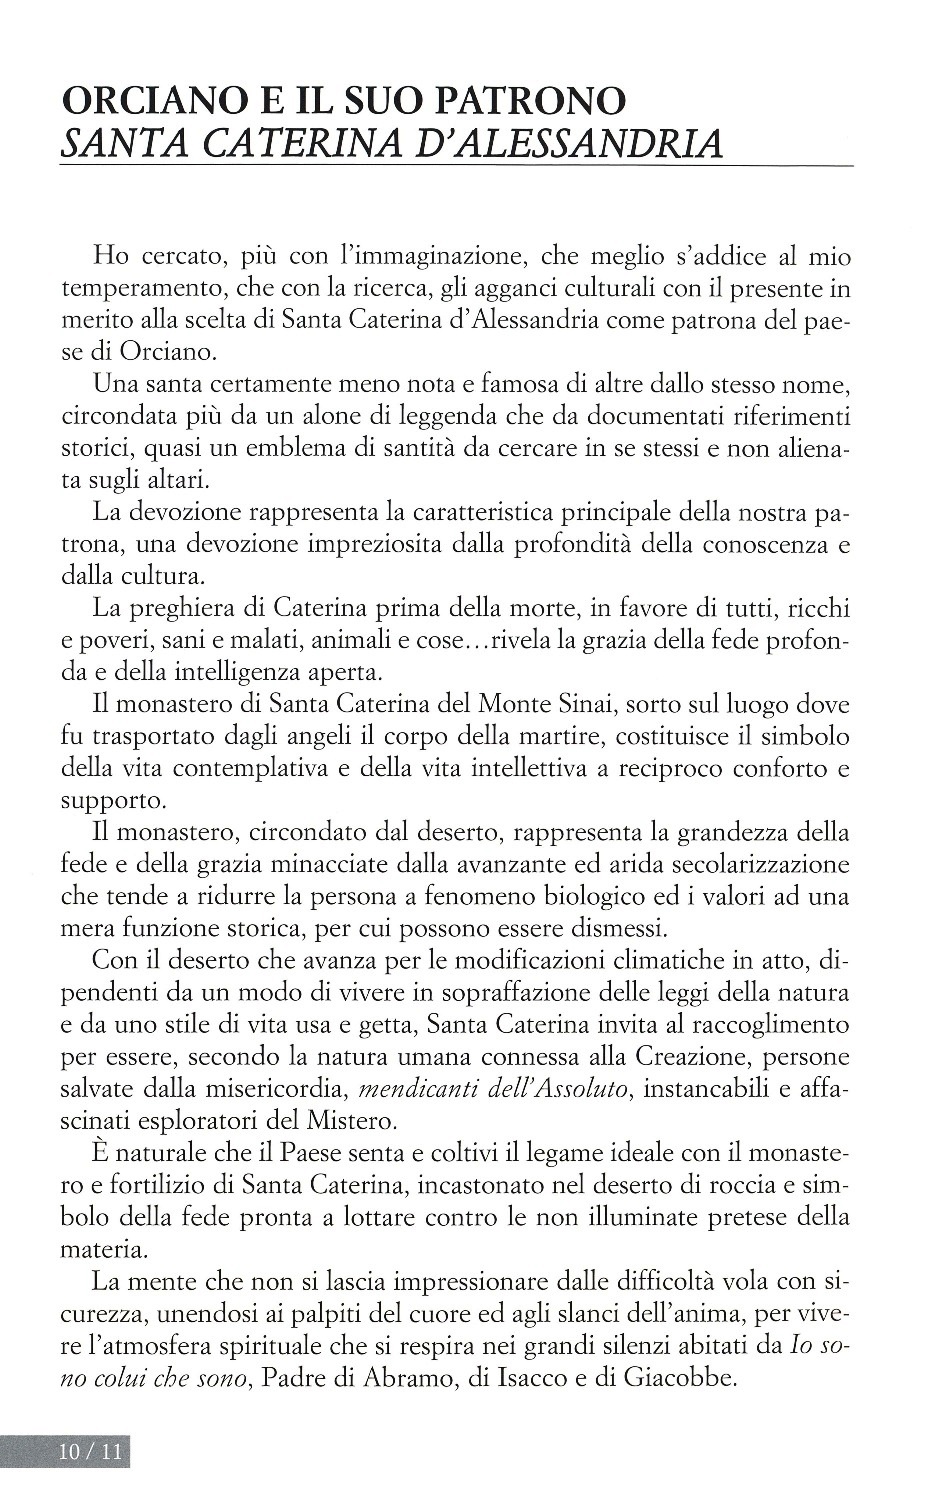 La torr i arduna tutti 2009 p.010